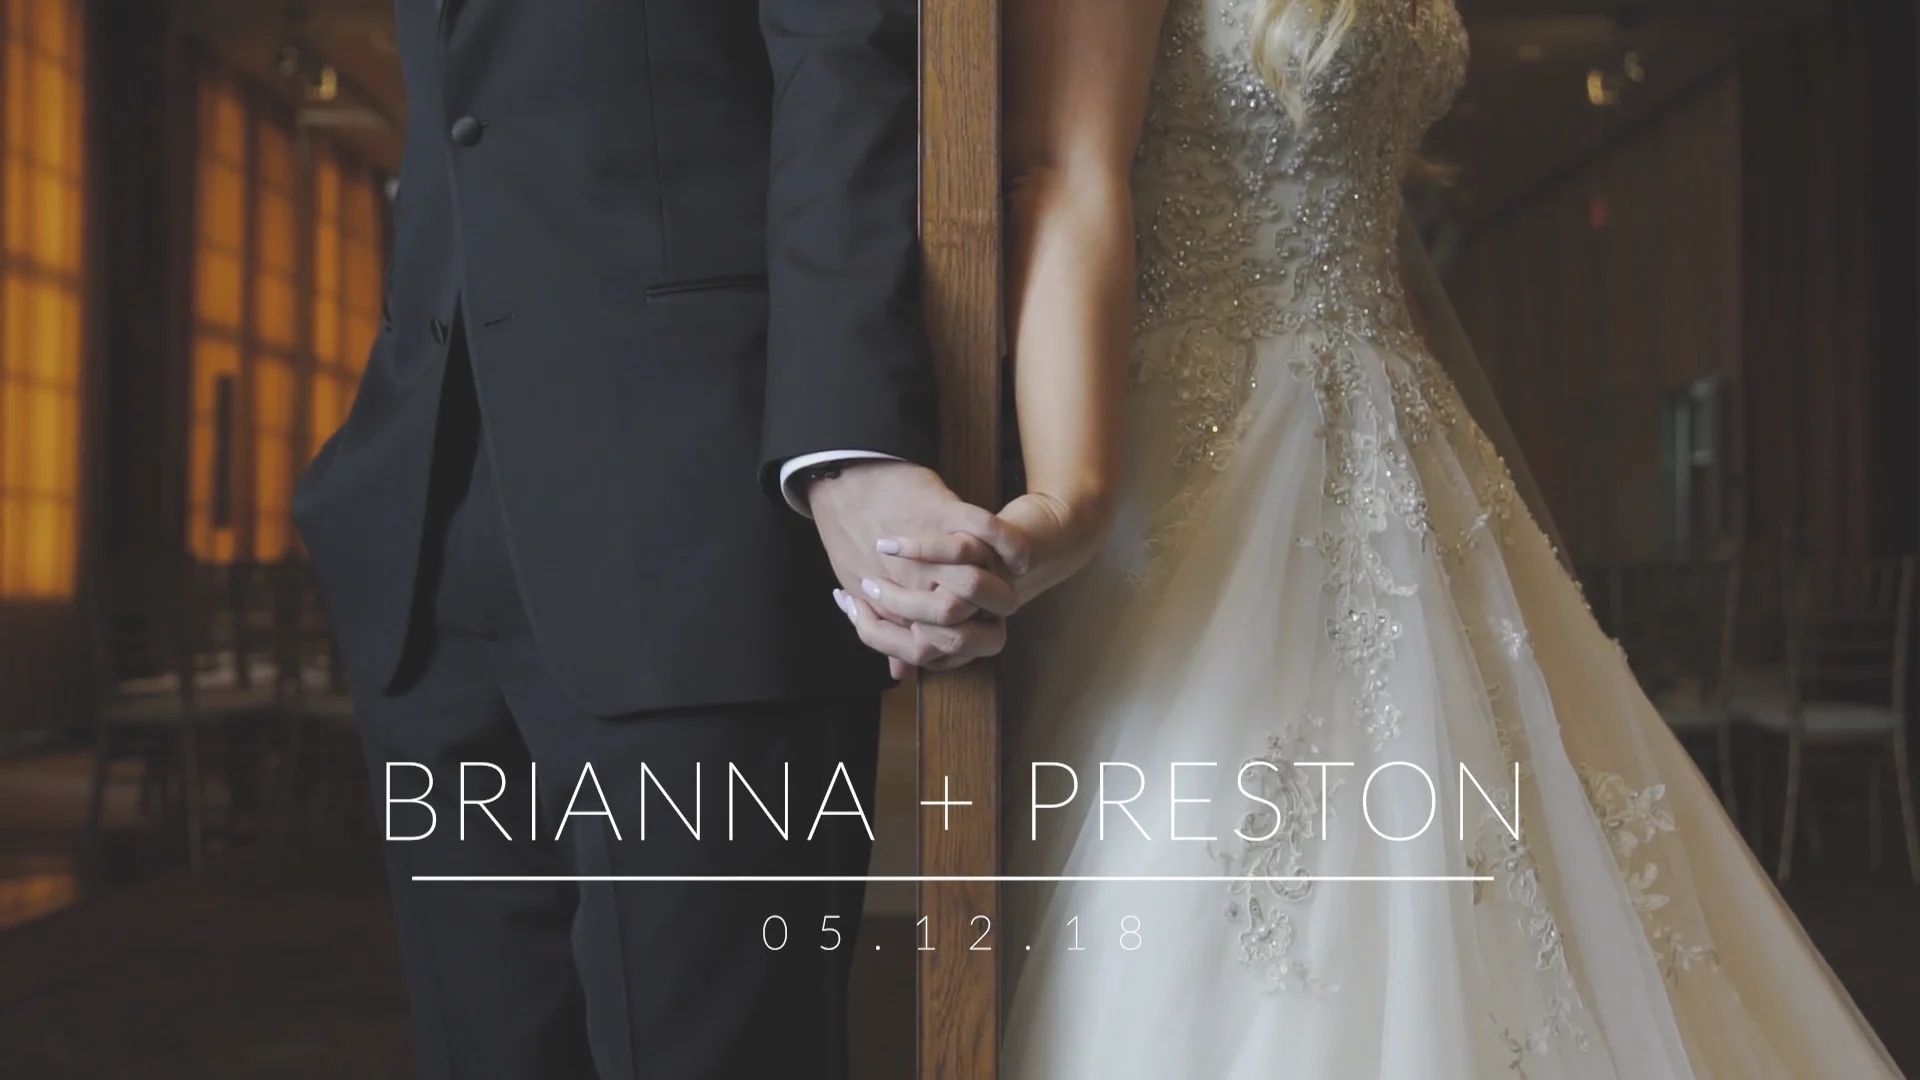 Watch Preston & Brianna